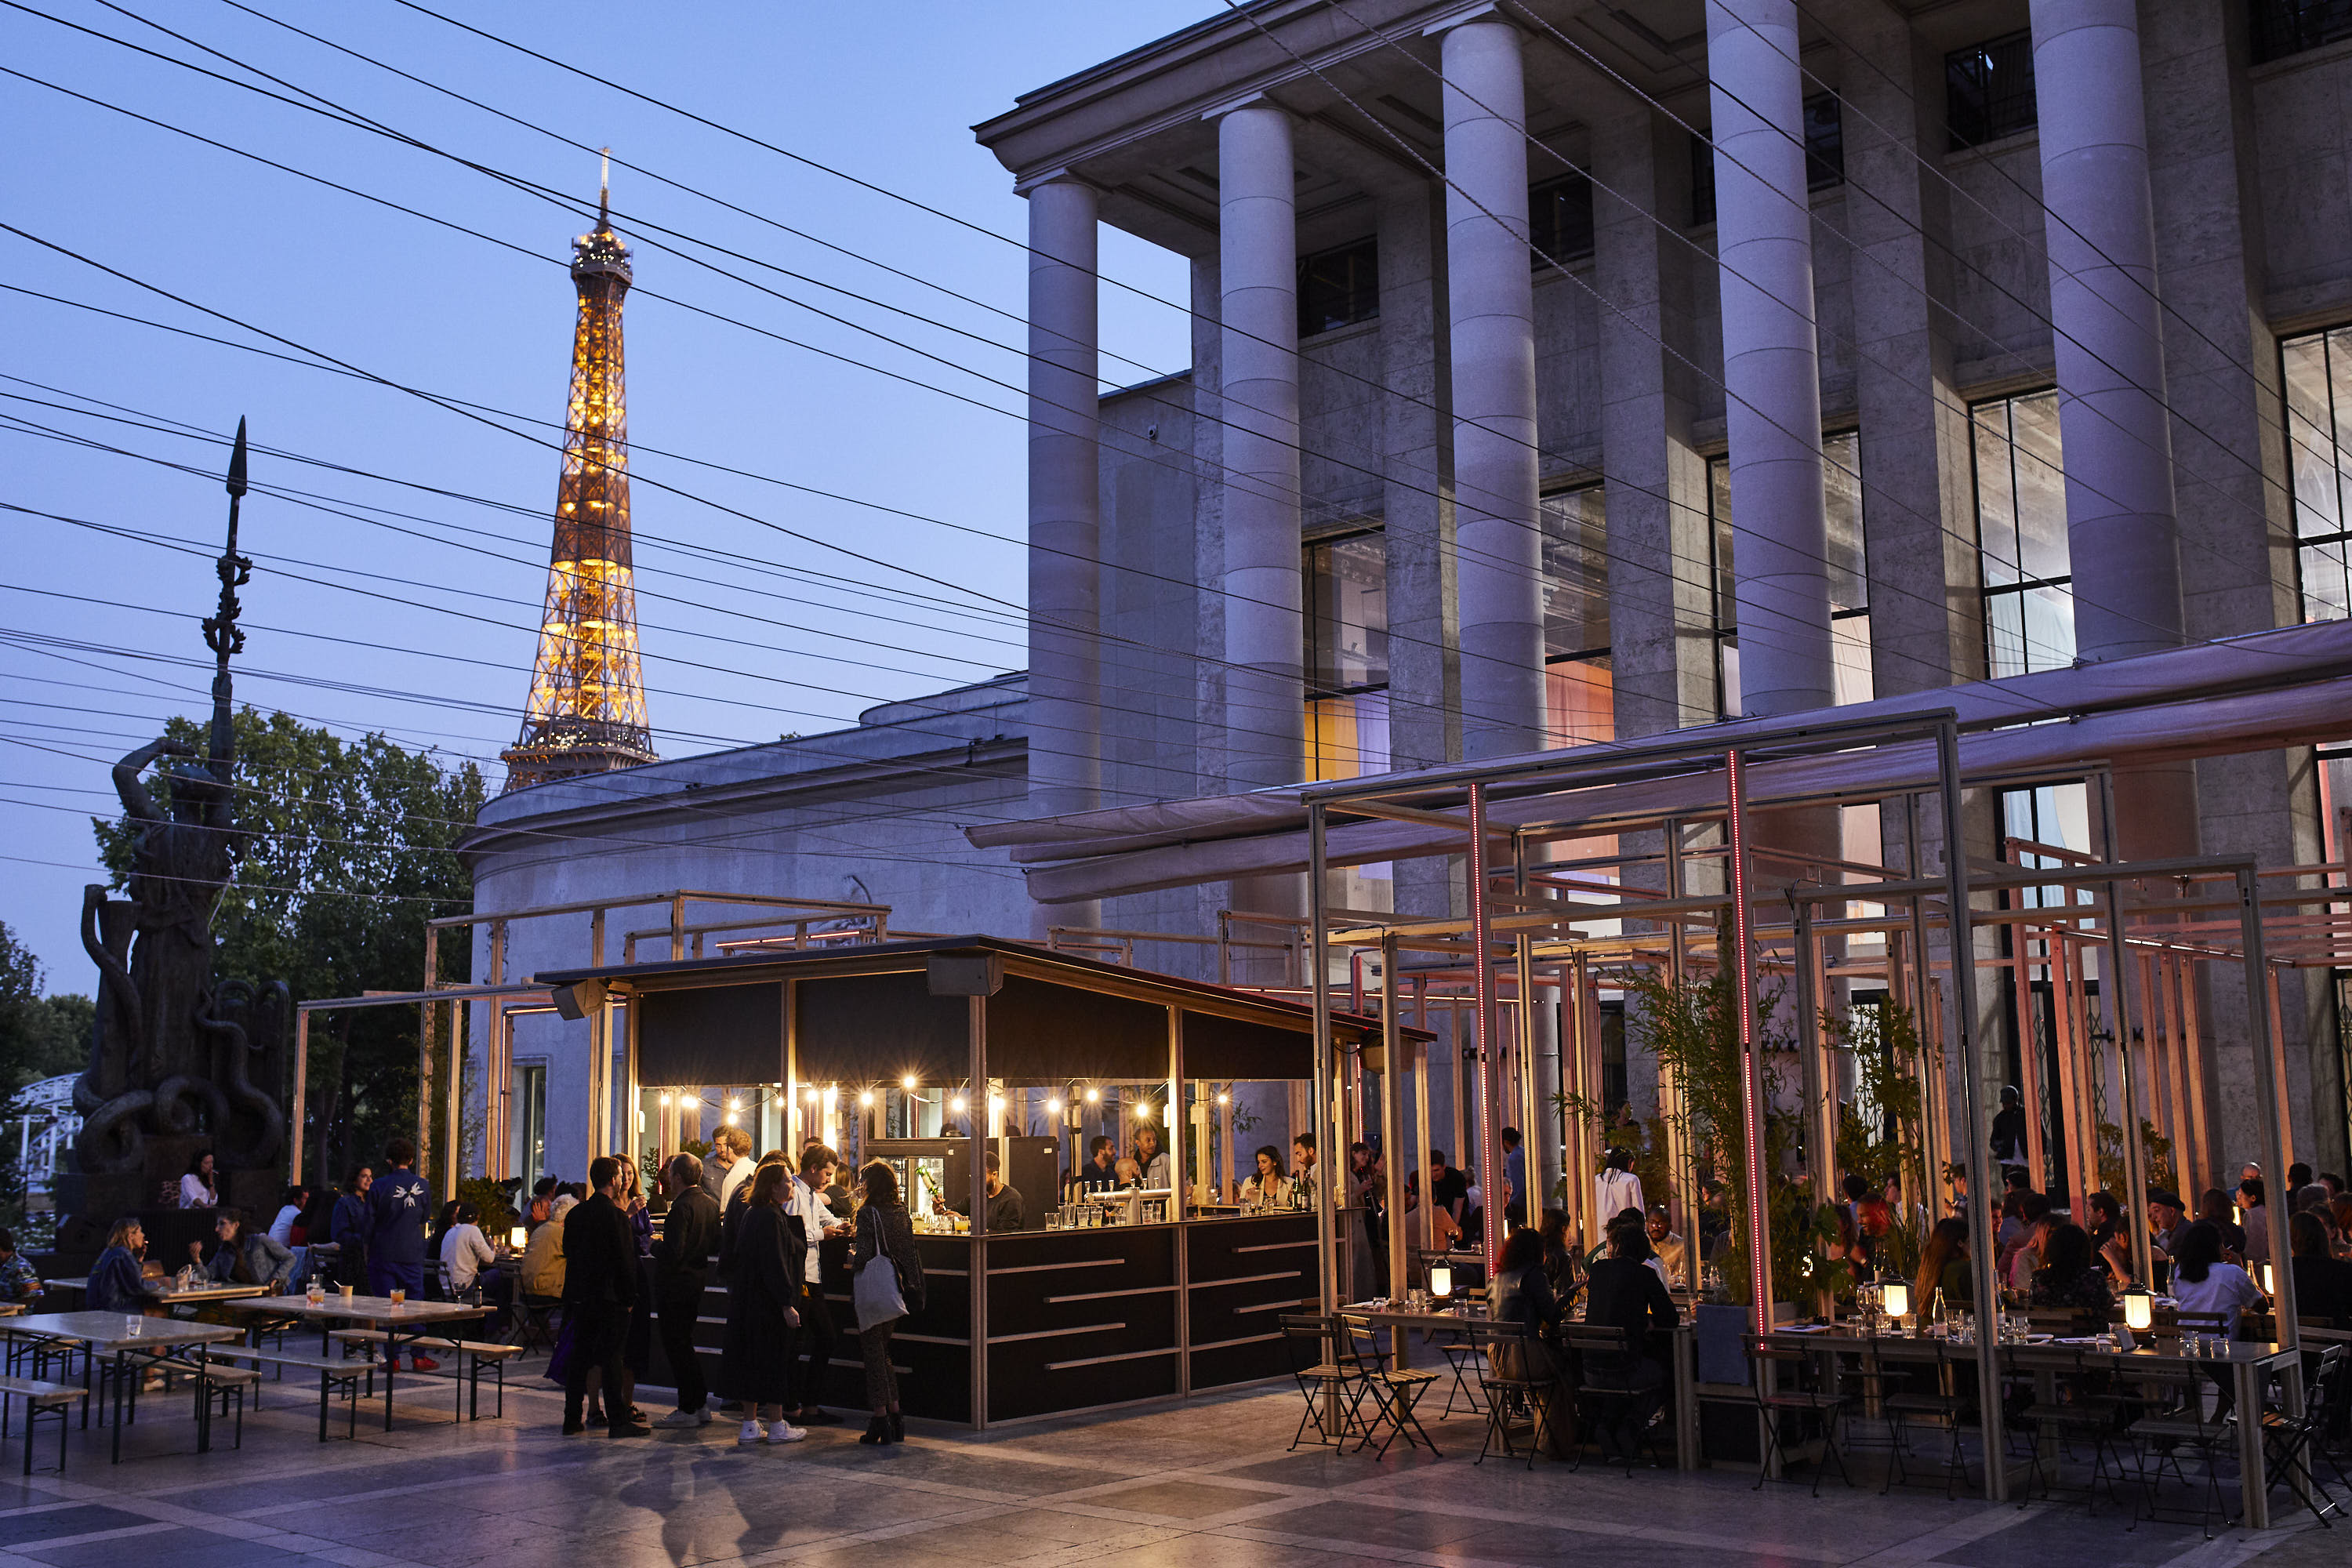 Lancement du jour, Edo, terrasse estivale éphémère du Palais de Tokyo - Food & Sens